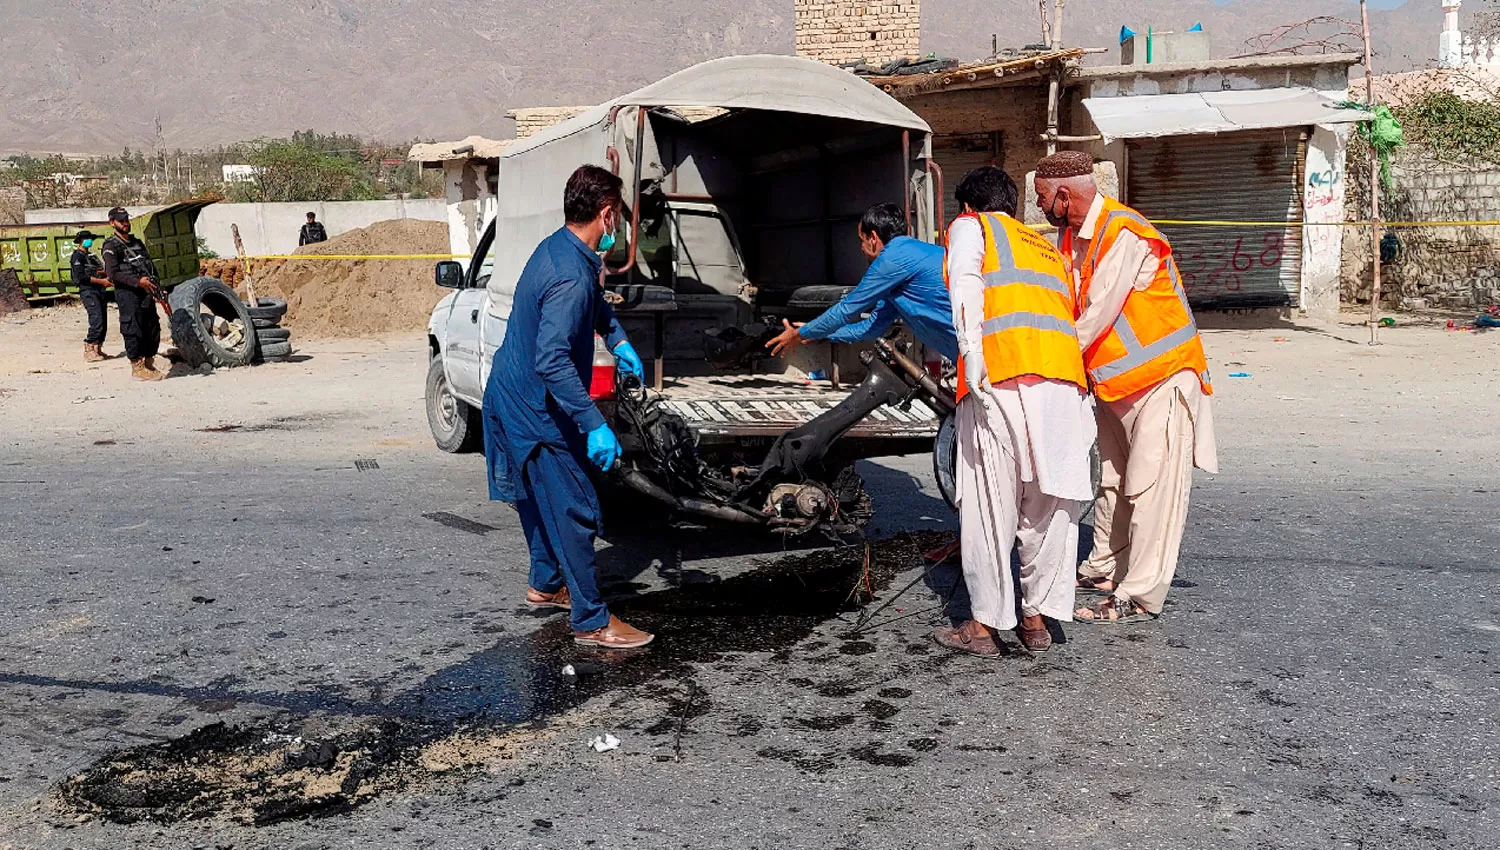 EN QUETTA. Peritos retiran los restos del vehículo utilizado para el ataque suicida en Pakistán.